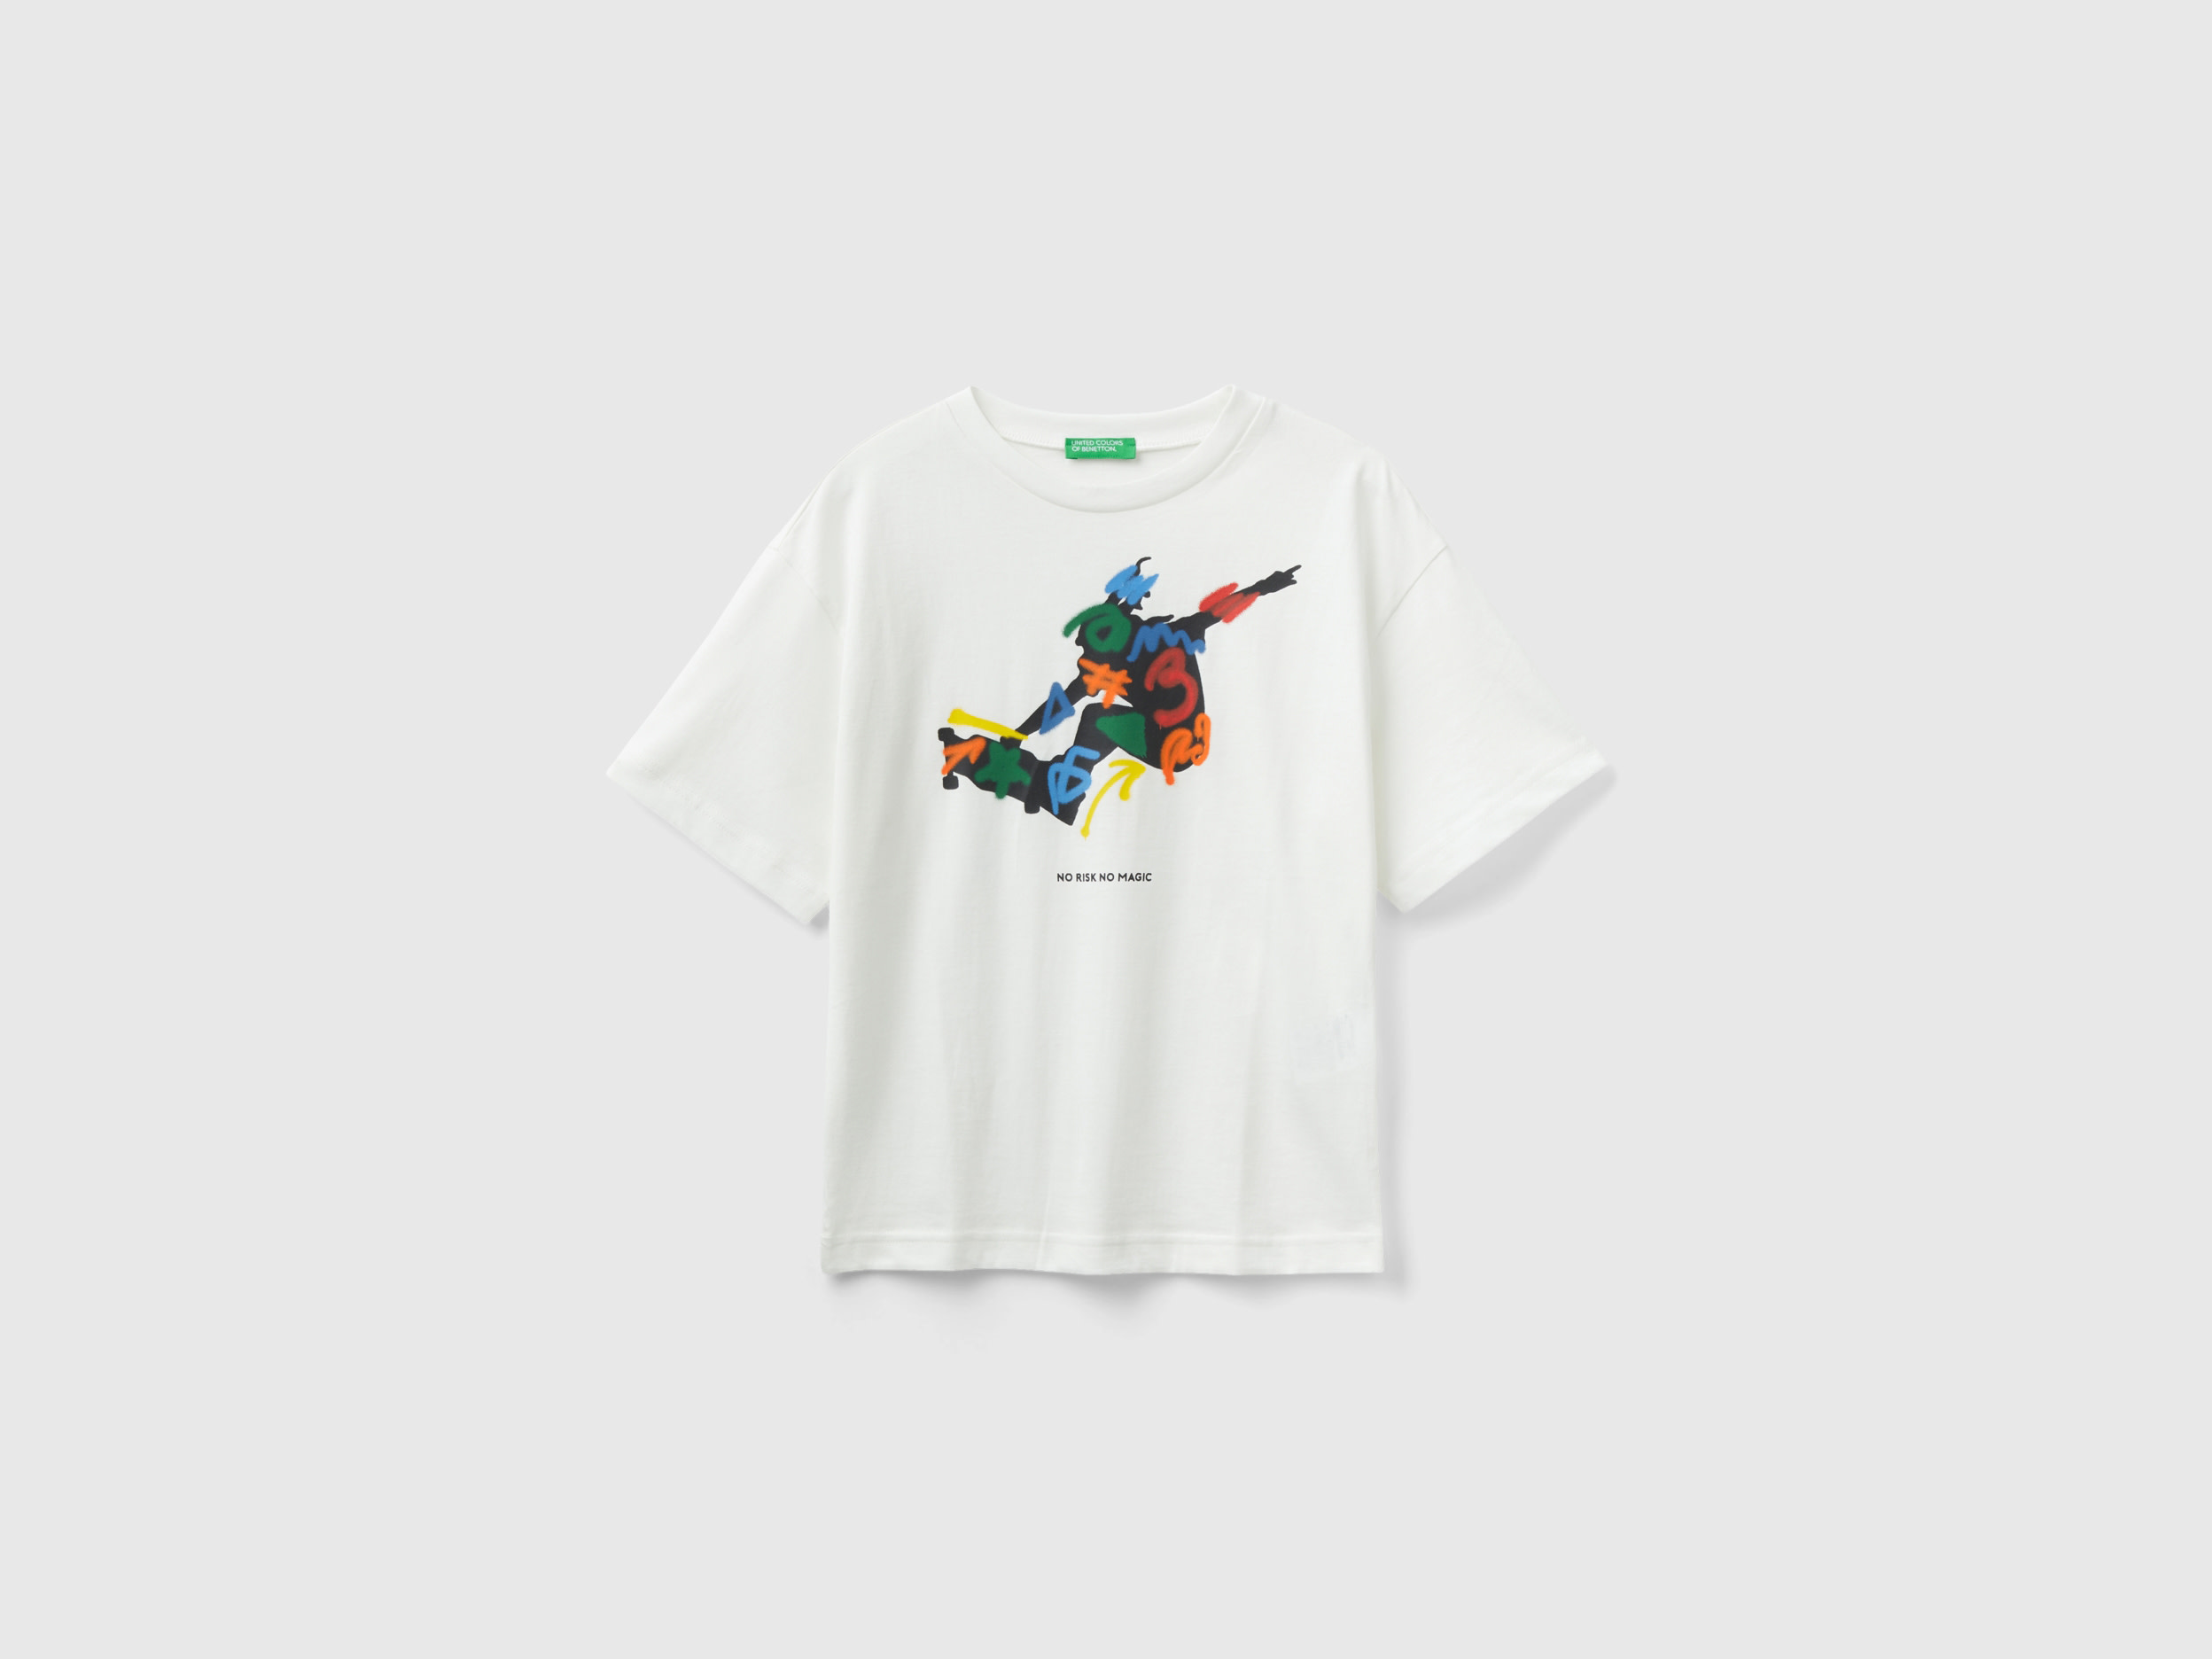 Benetton, Crew Neck T-shirt With Print, size 3XL, Creamy White, Kids